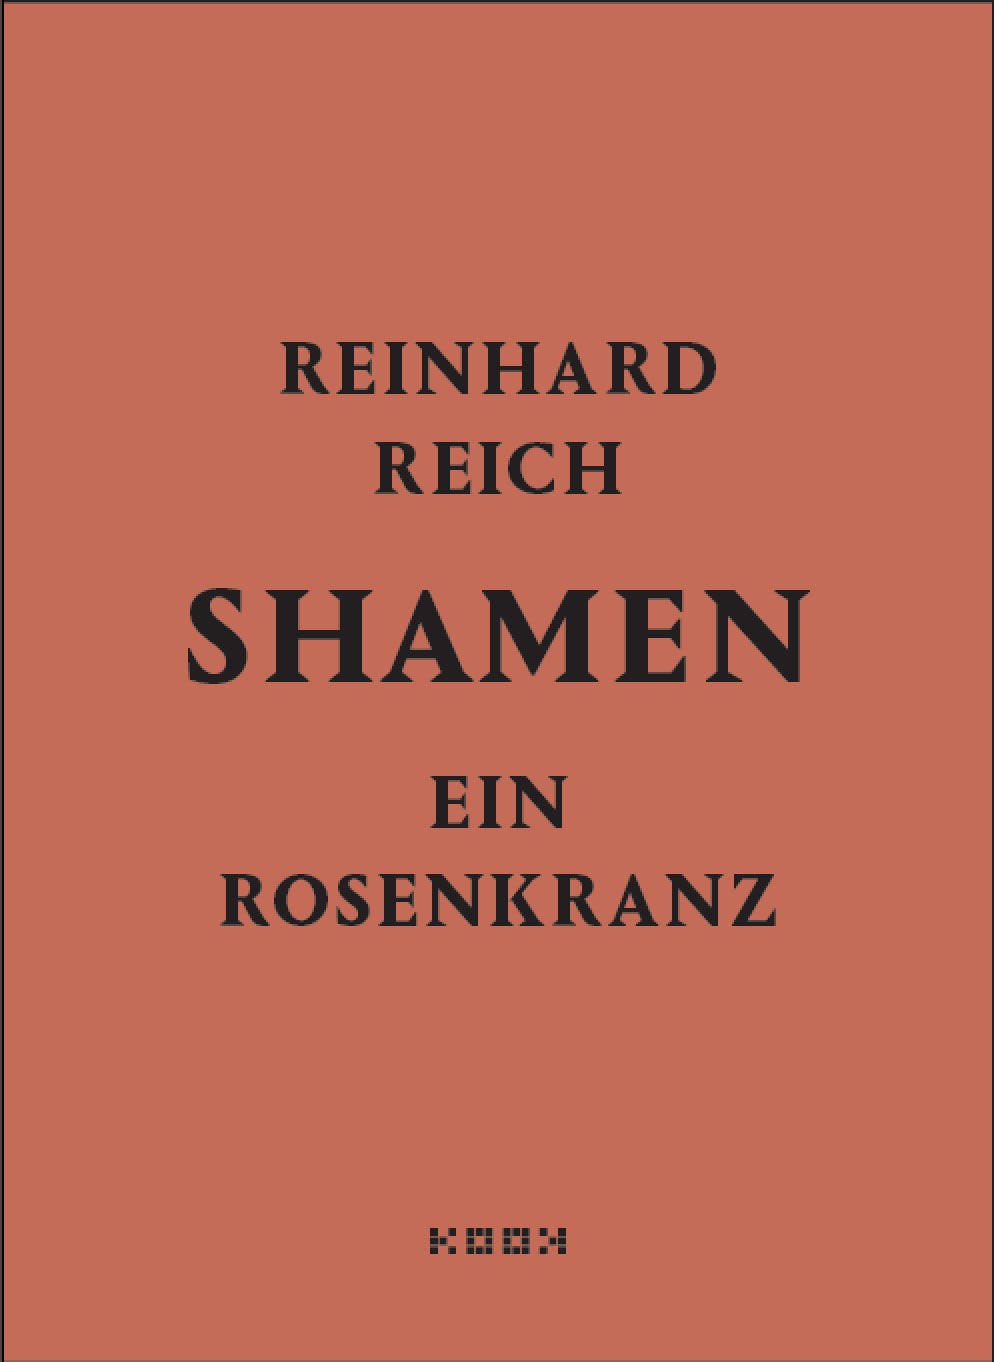 Reinhard Reich. shamen. ein rosenkranz